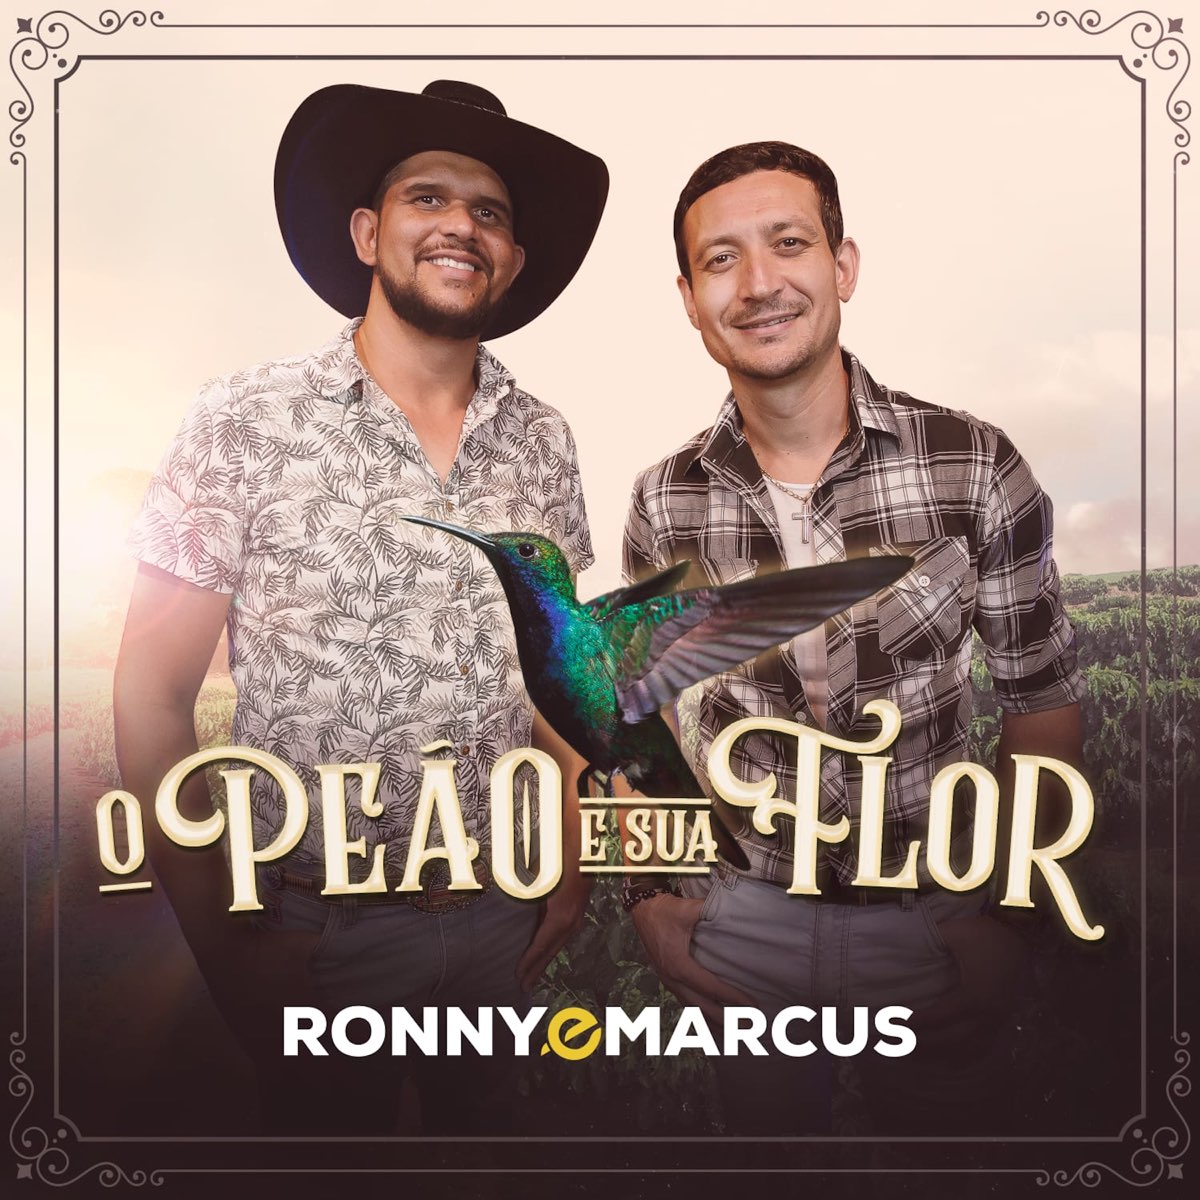 O Peão e Sua Flor - Single - Album by Ronny e Marcus - Apple Music